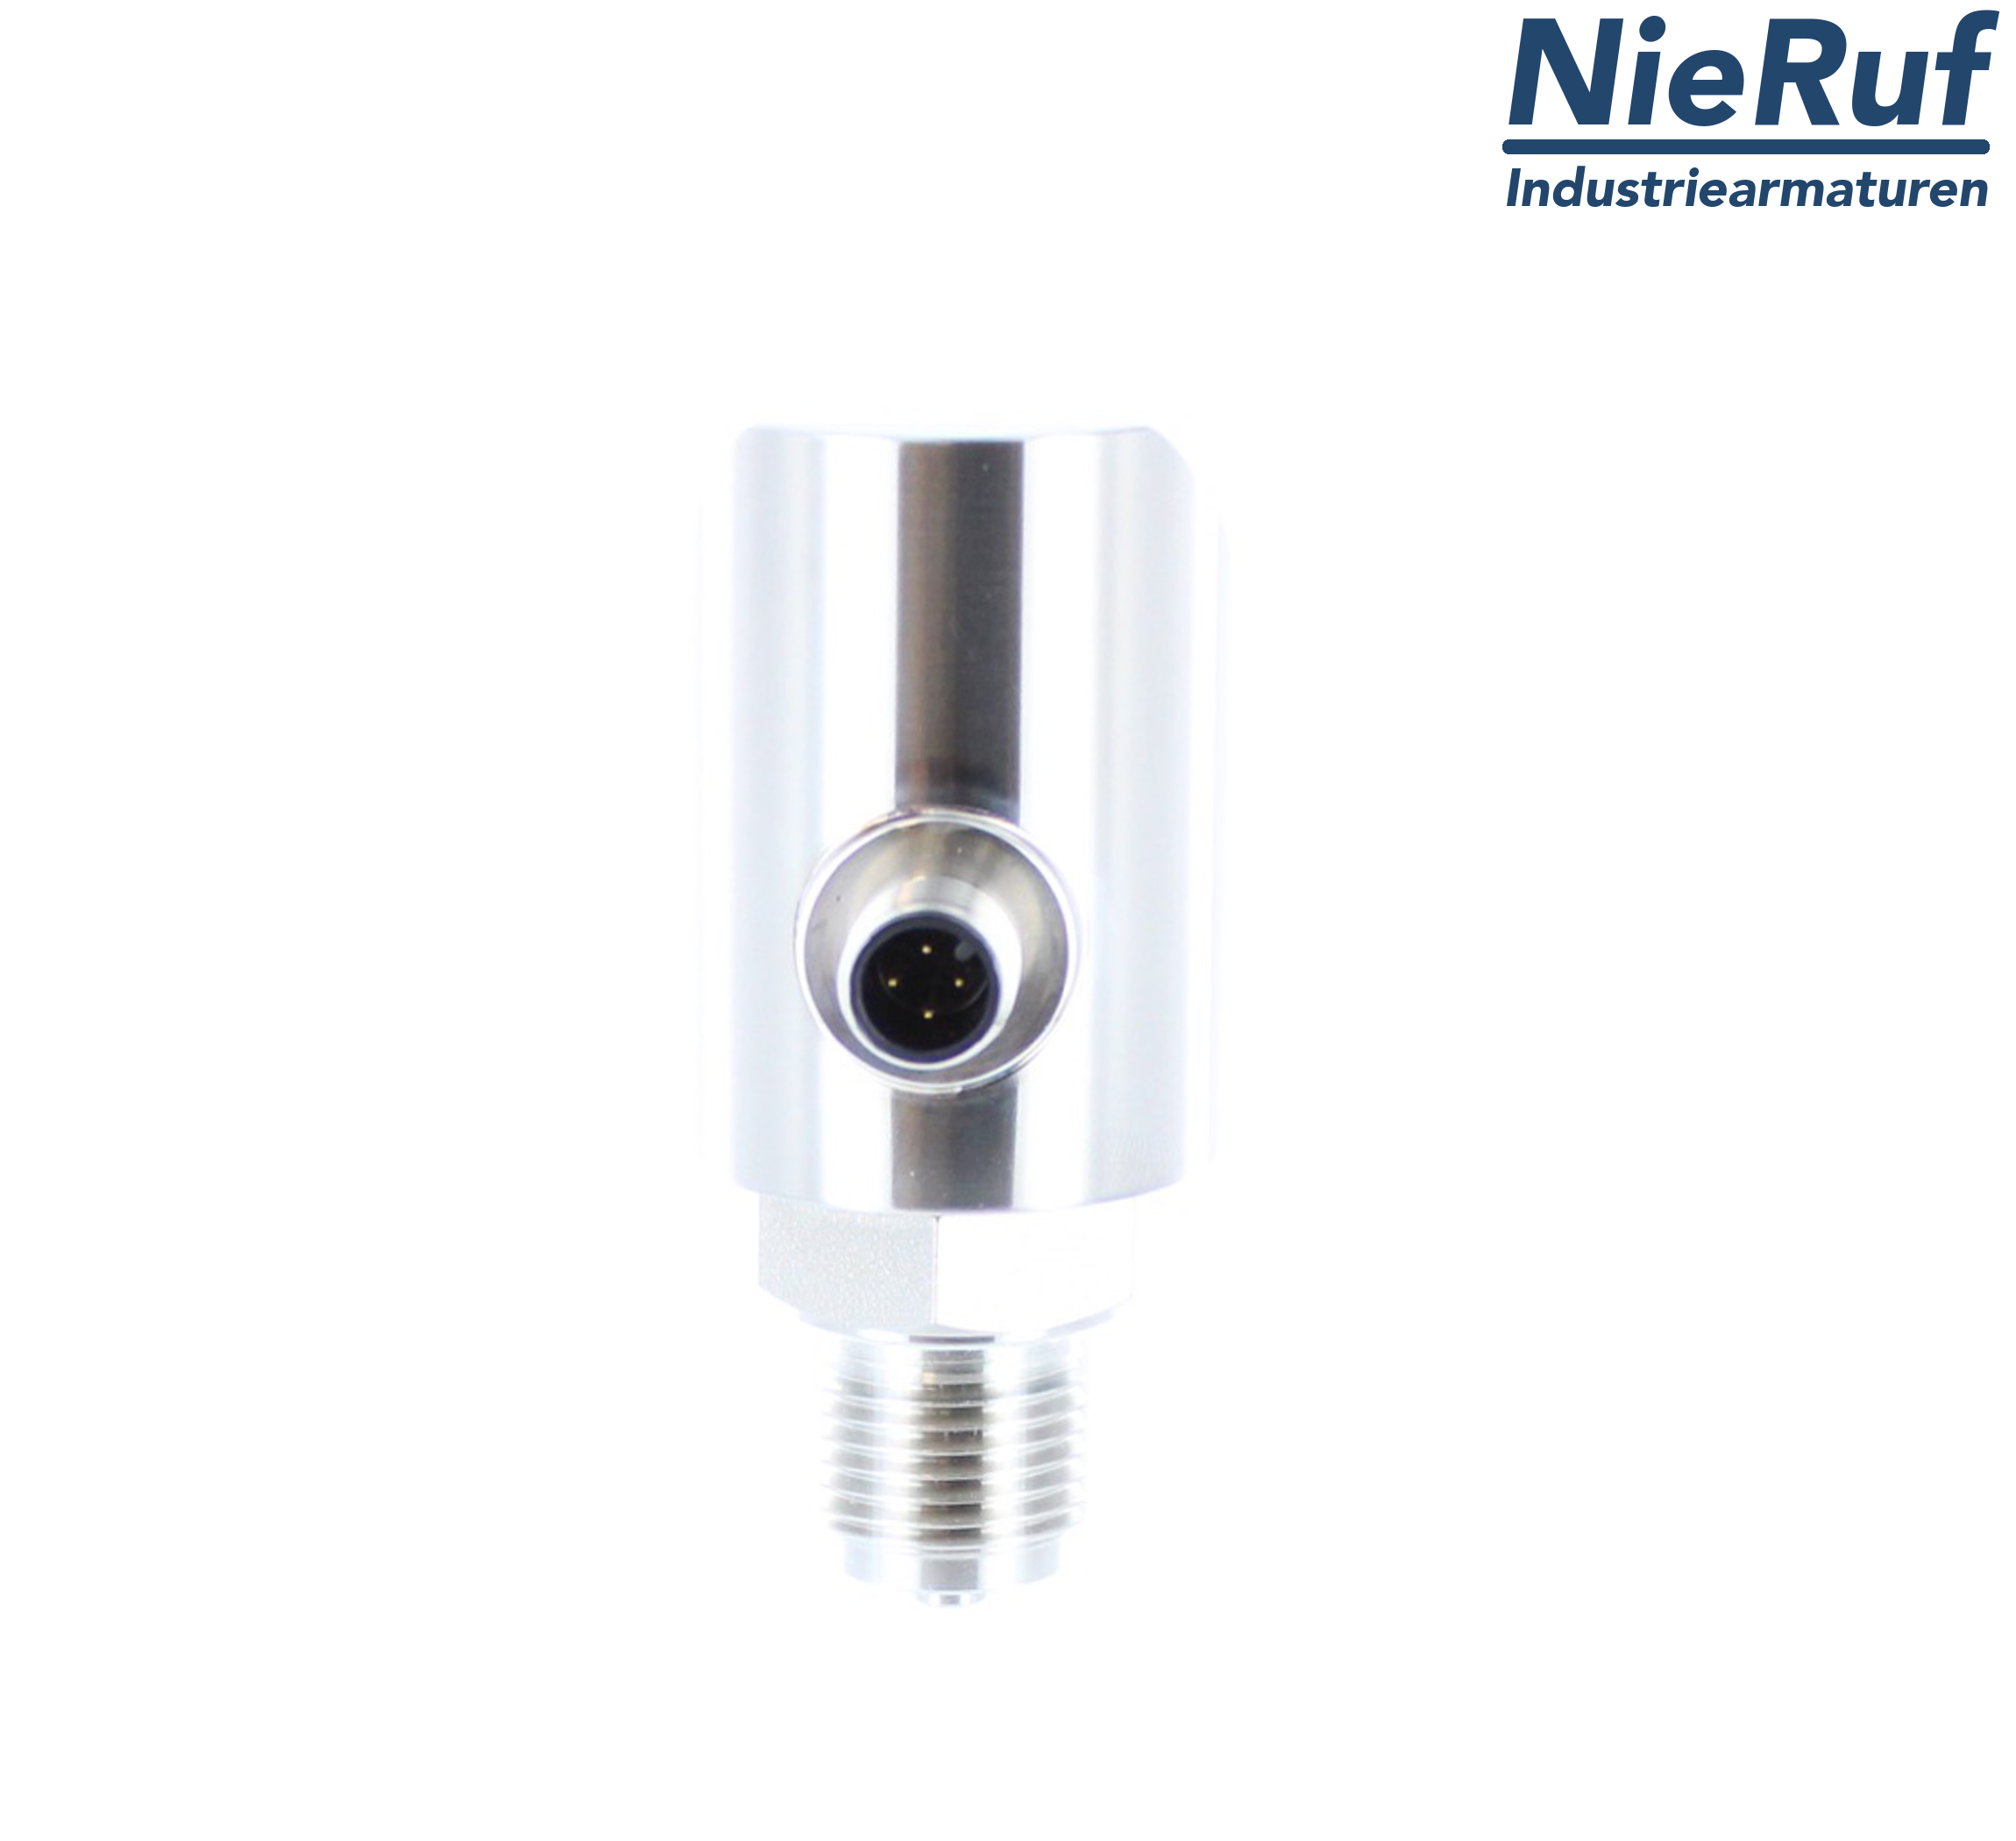 digital pressure sensor G 1/4" B 5-wire: 2xPNP, 1x4 - 20mA FPM 0,0 - 100,0 bar